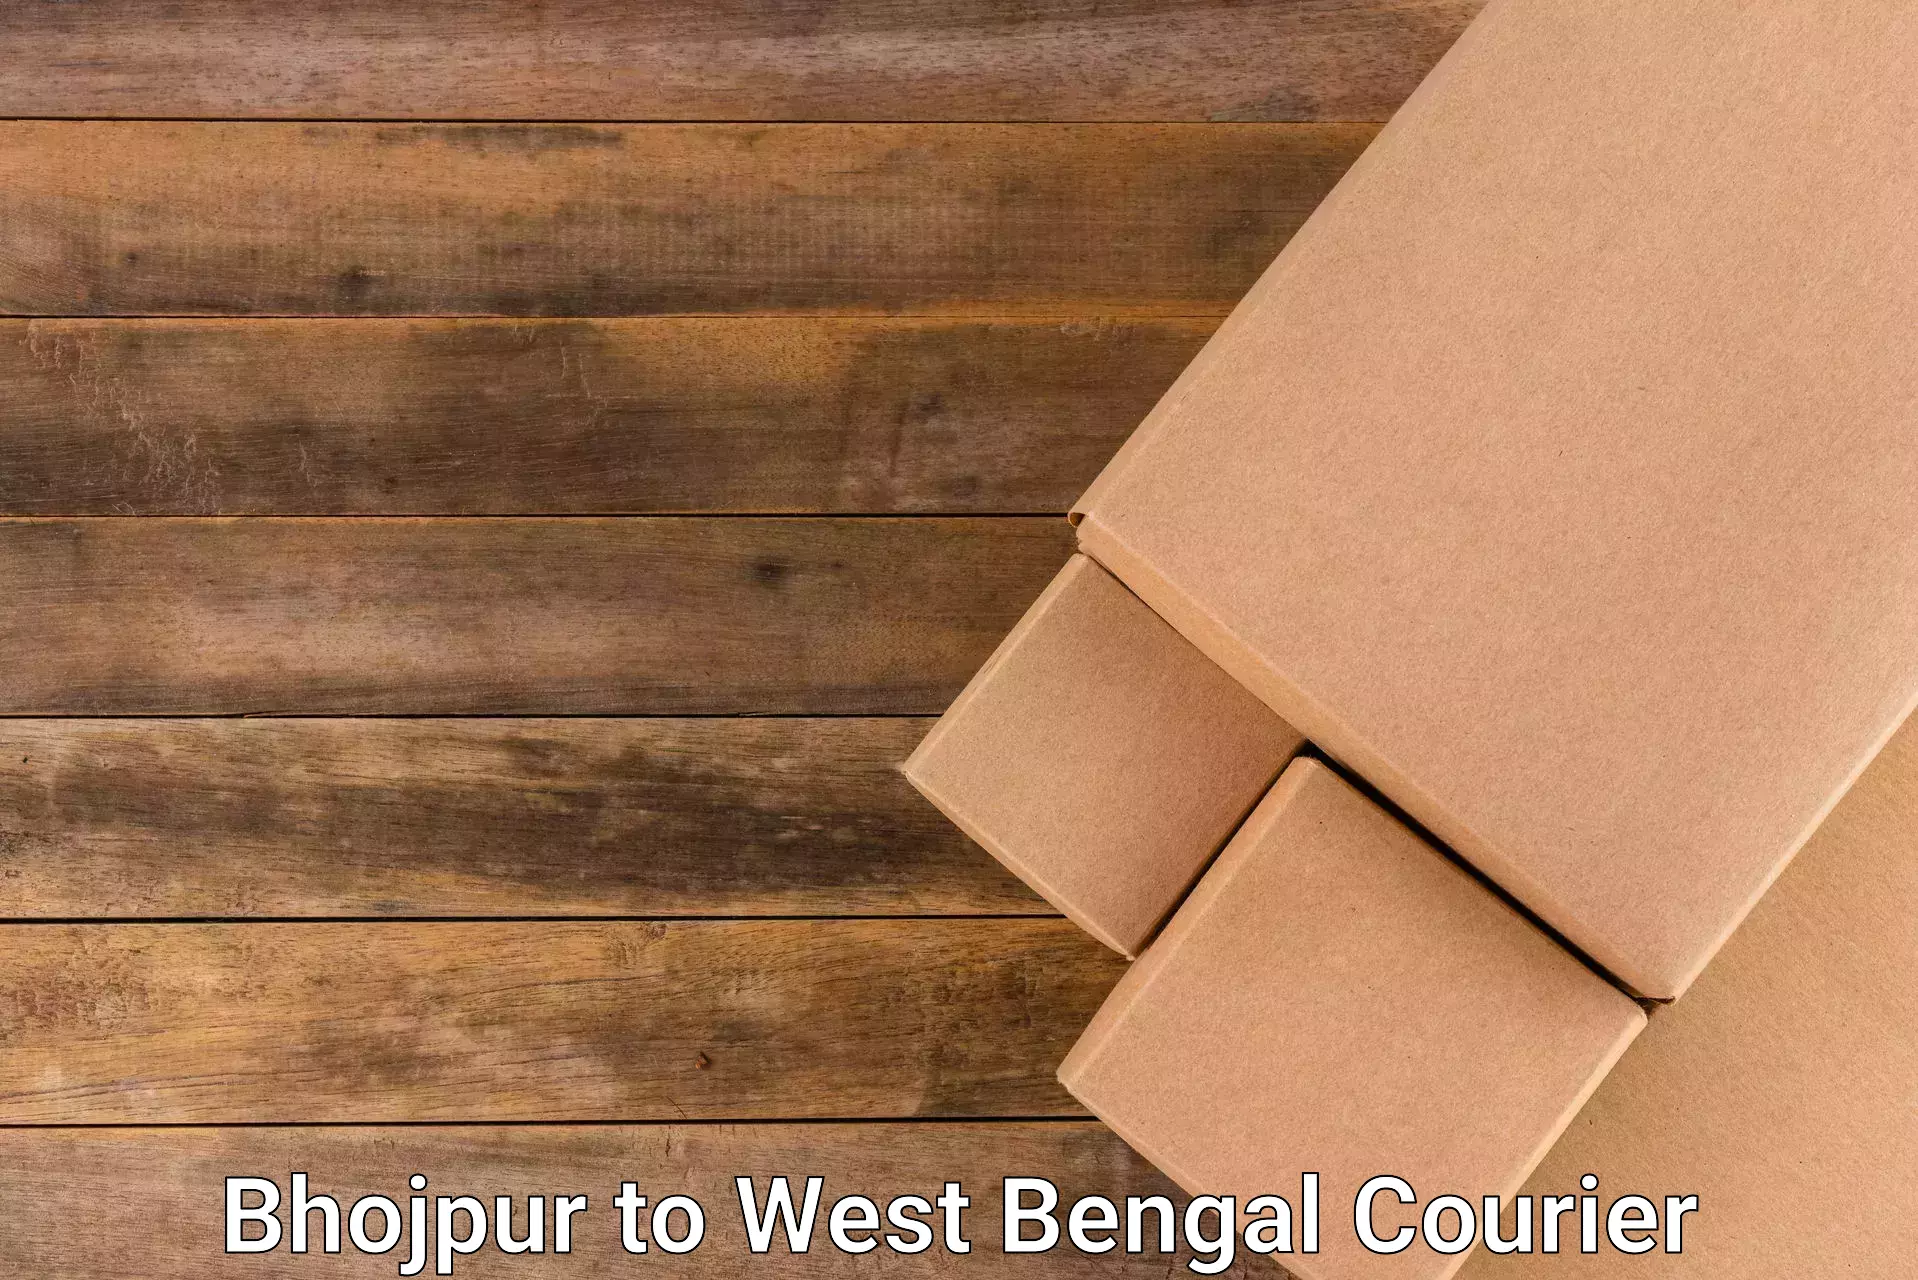 24/7 courier service in Bhojpur to Bara Bazar